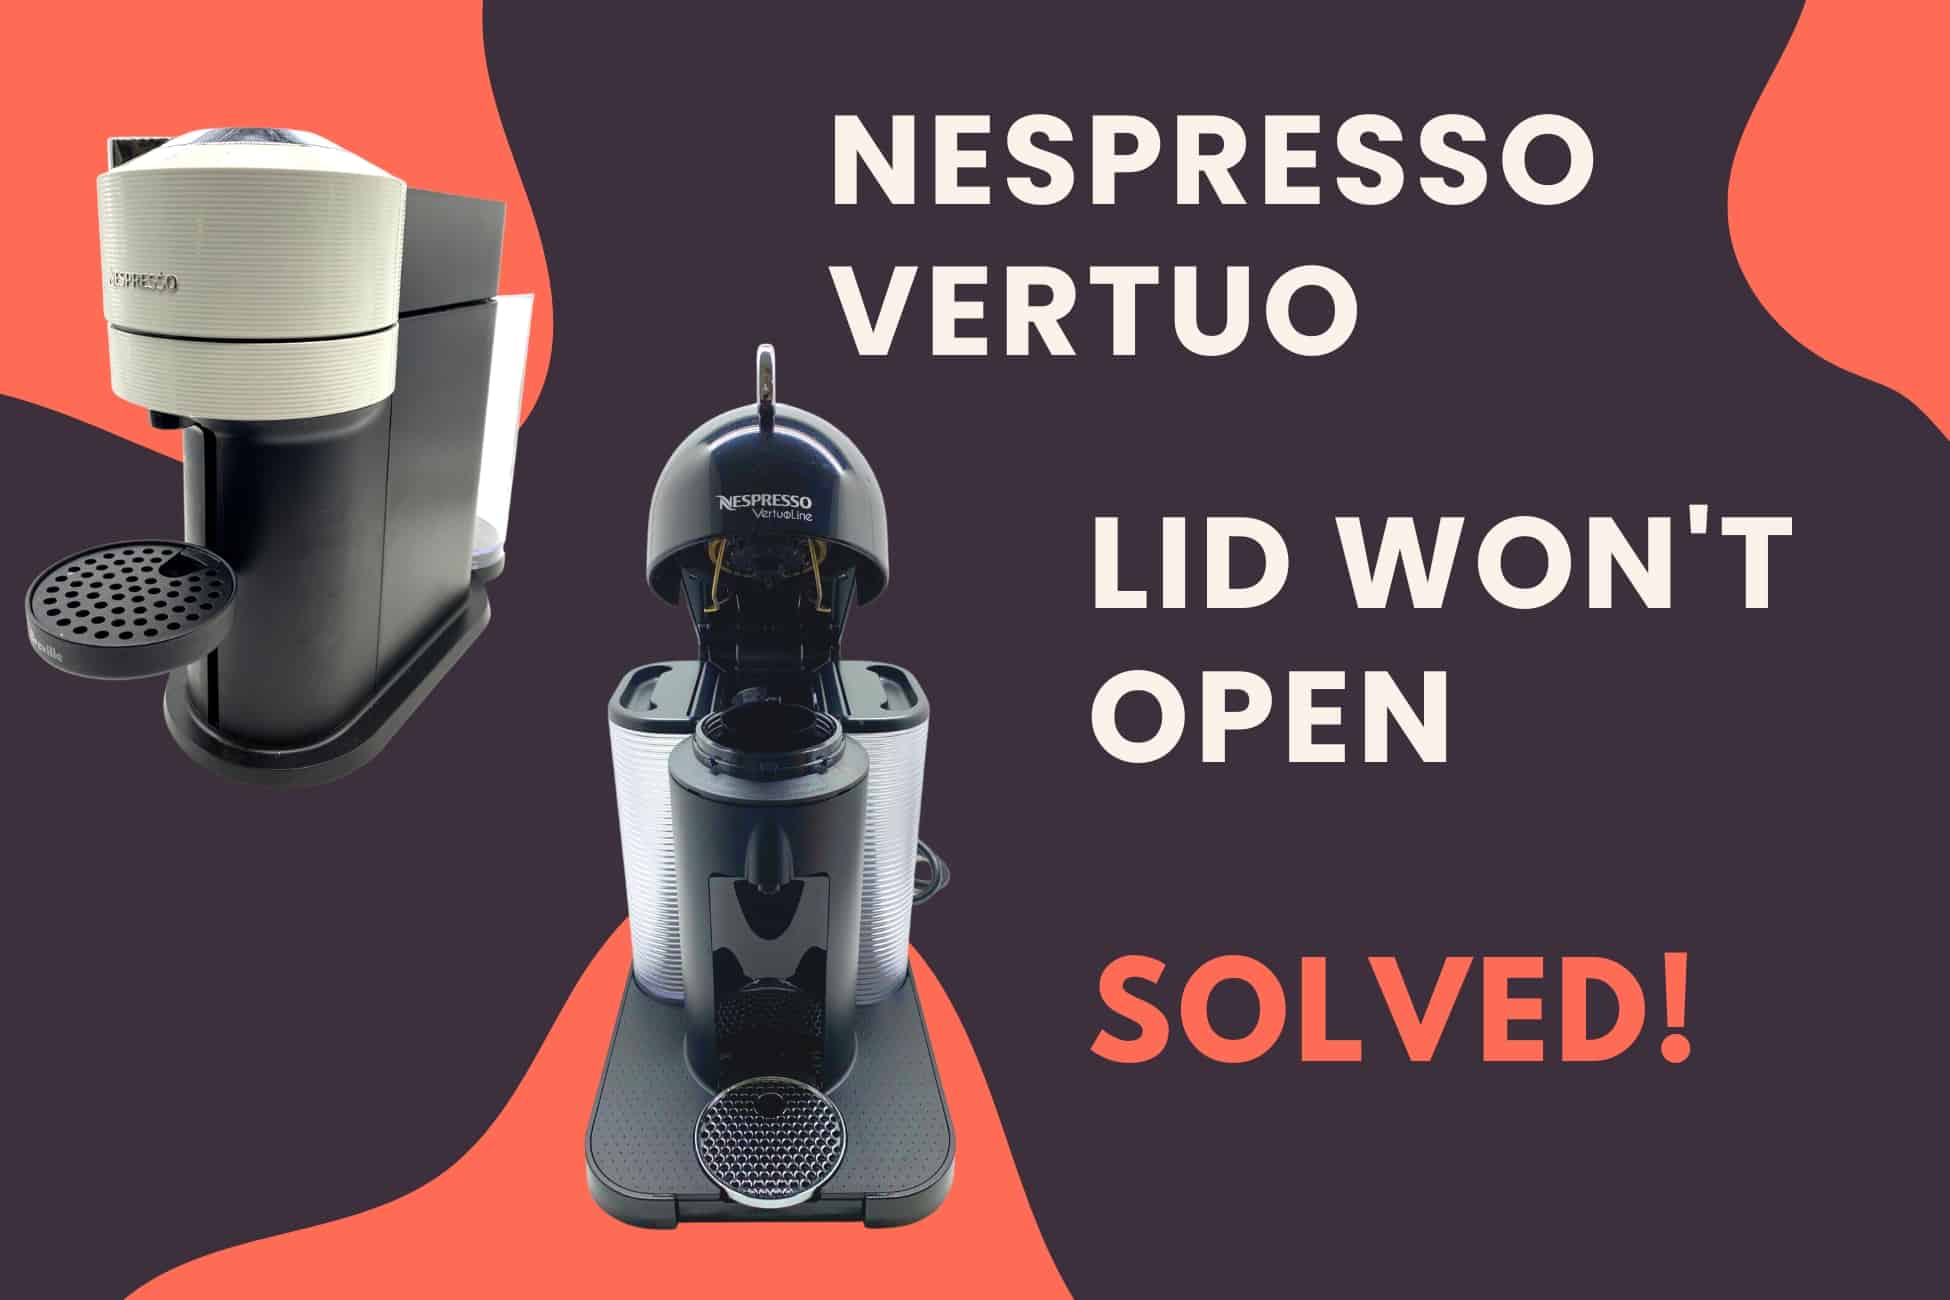 Nespresso Vertuo lid wont open